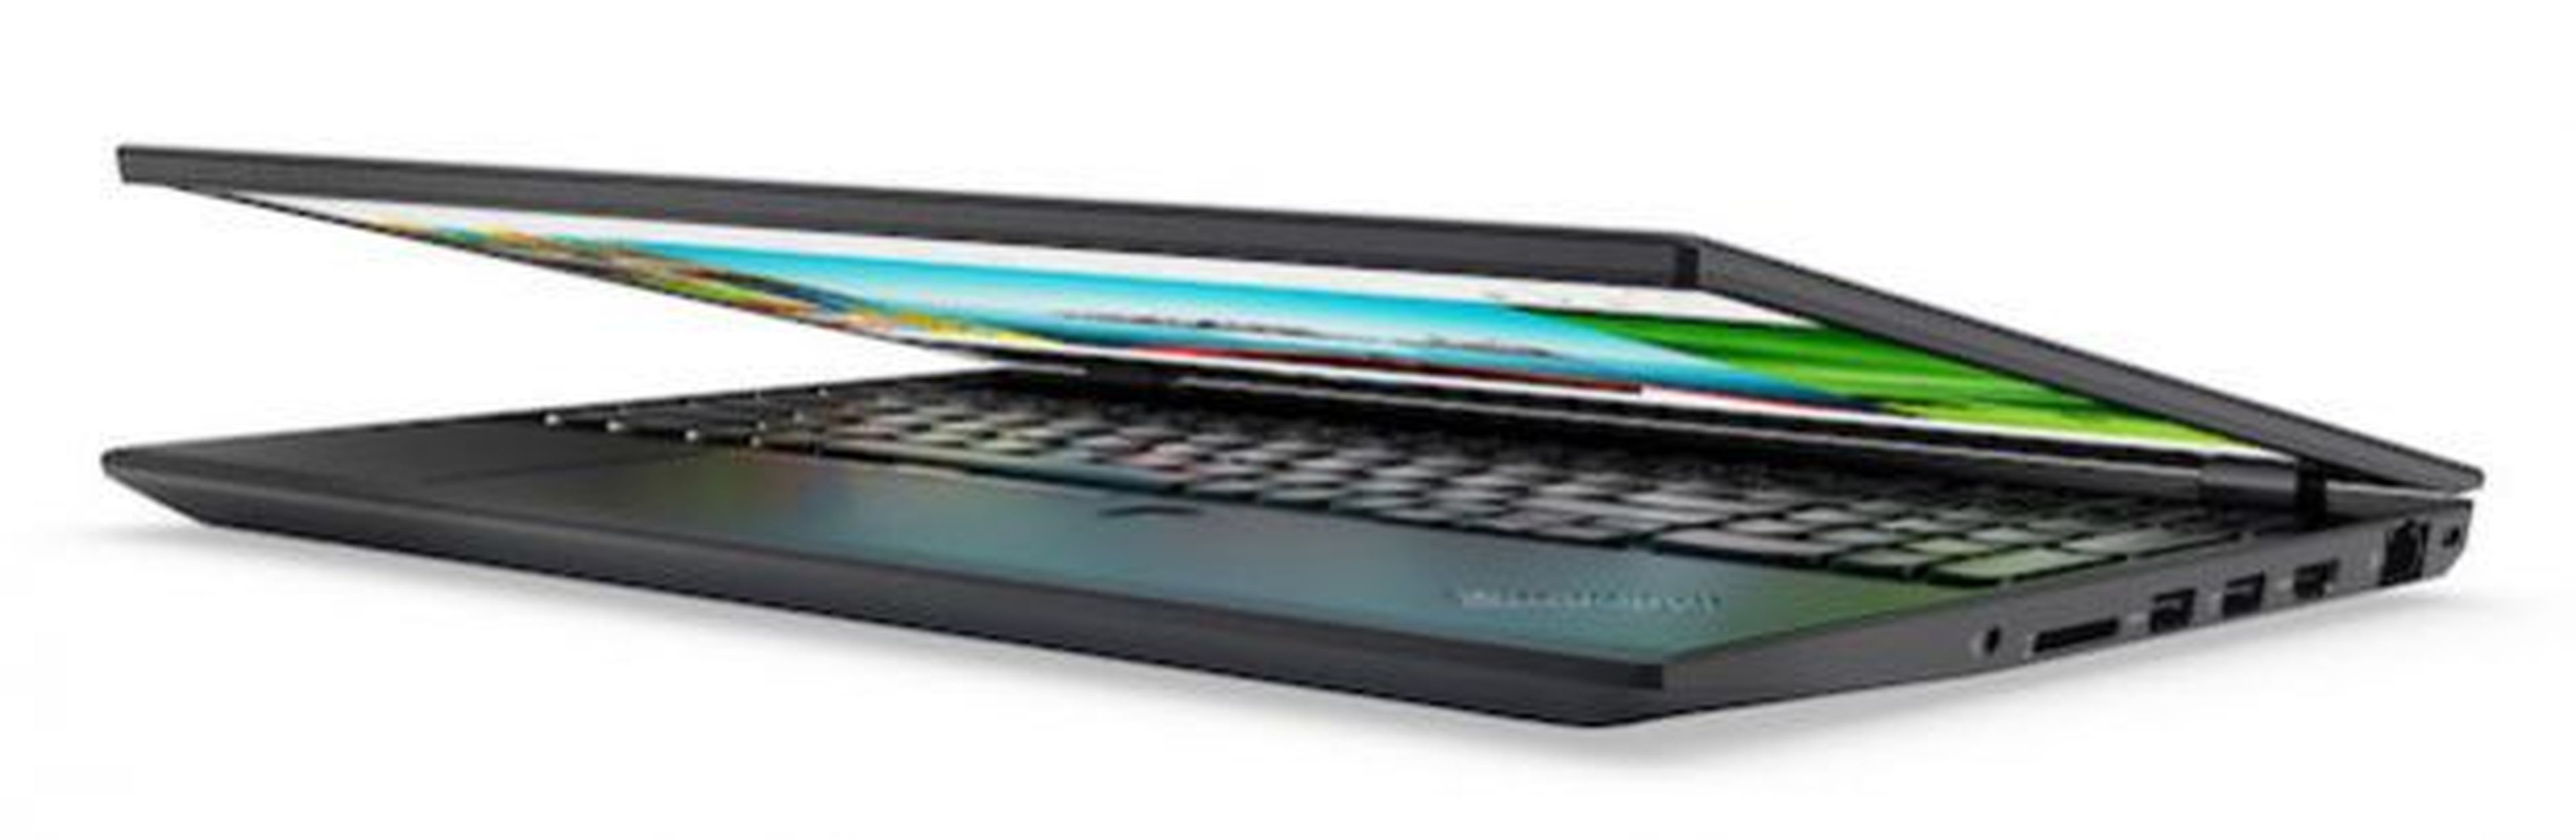 Lenovo ThinkPad P51a